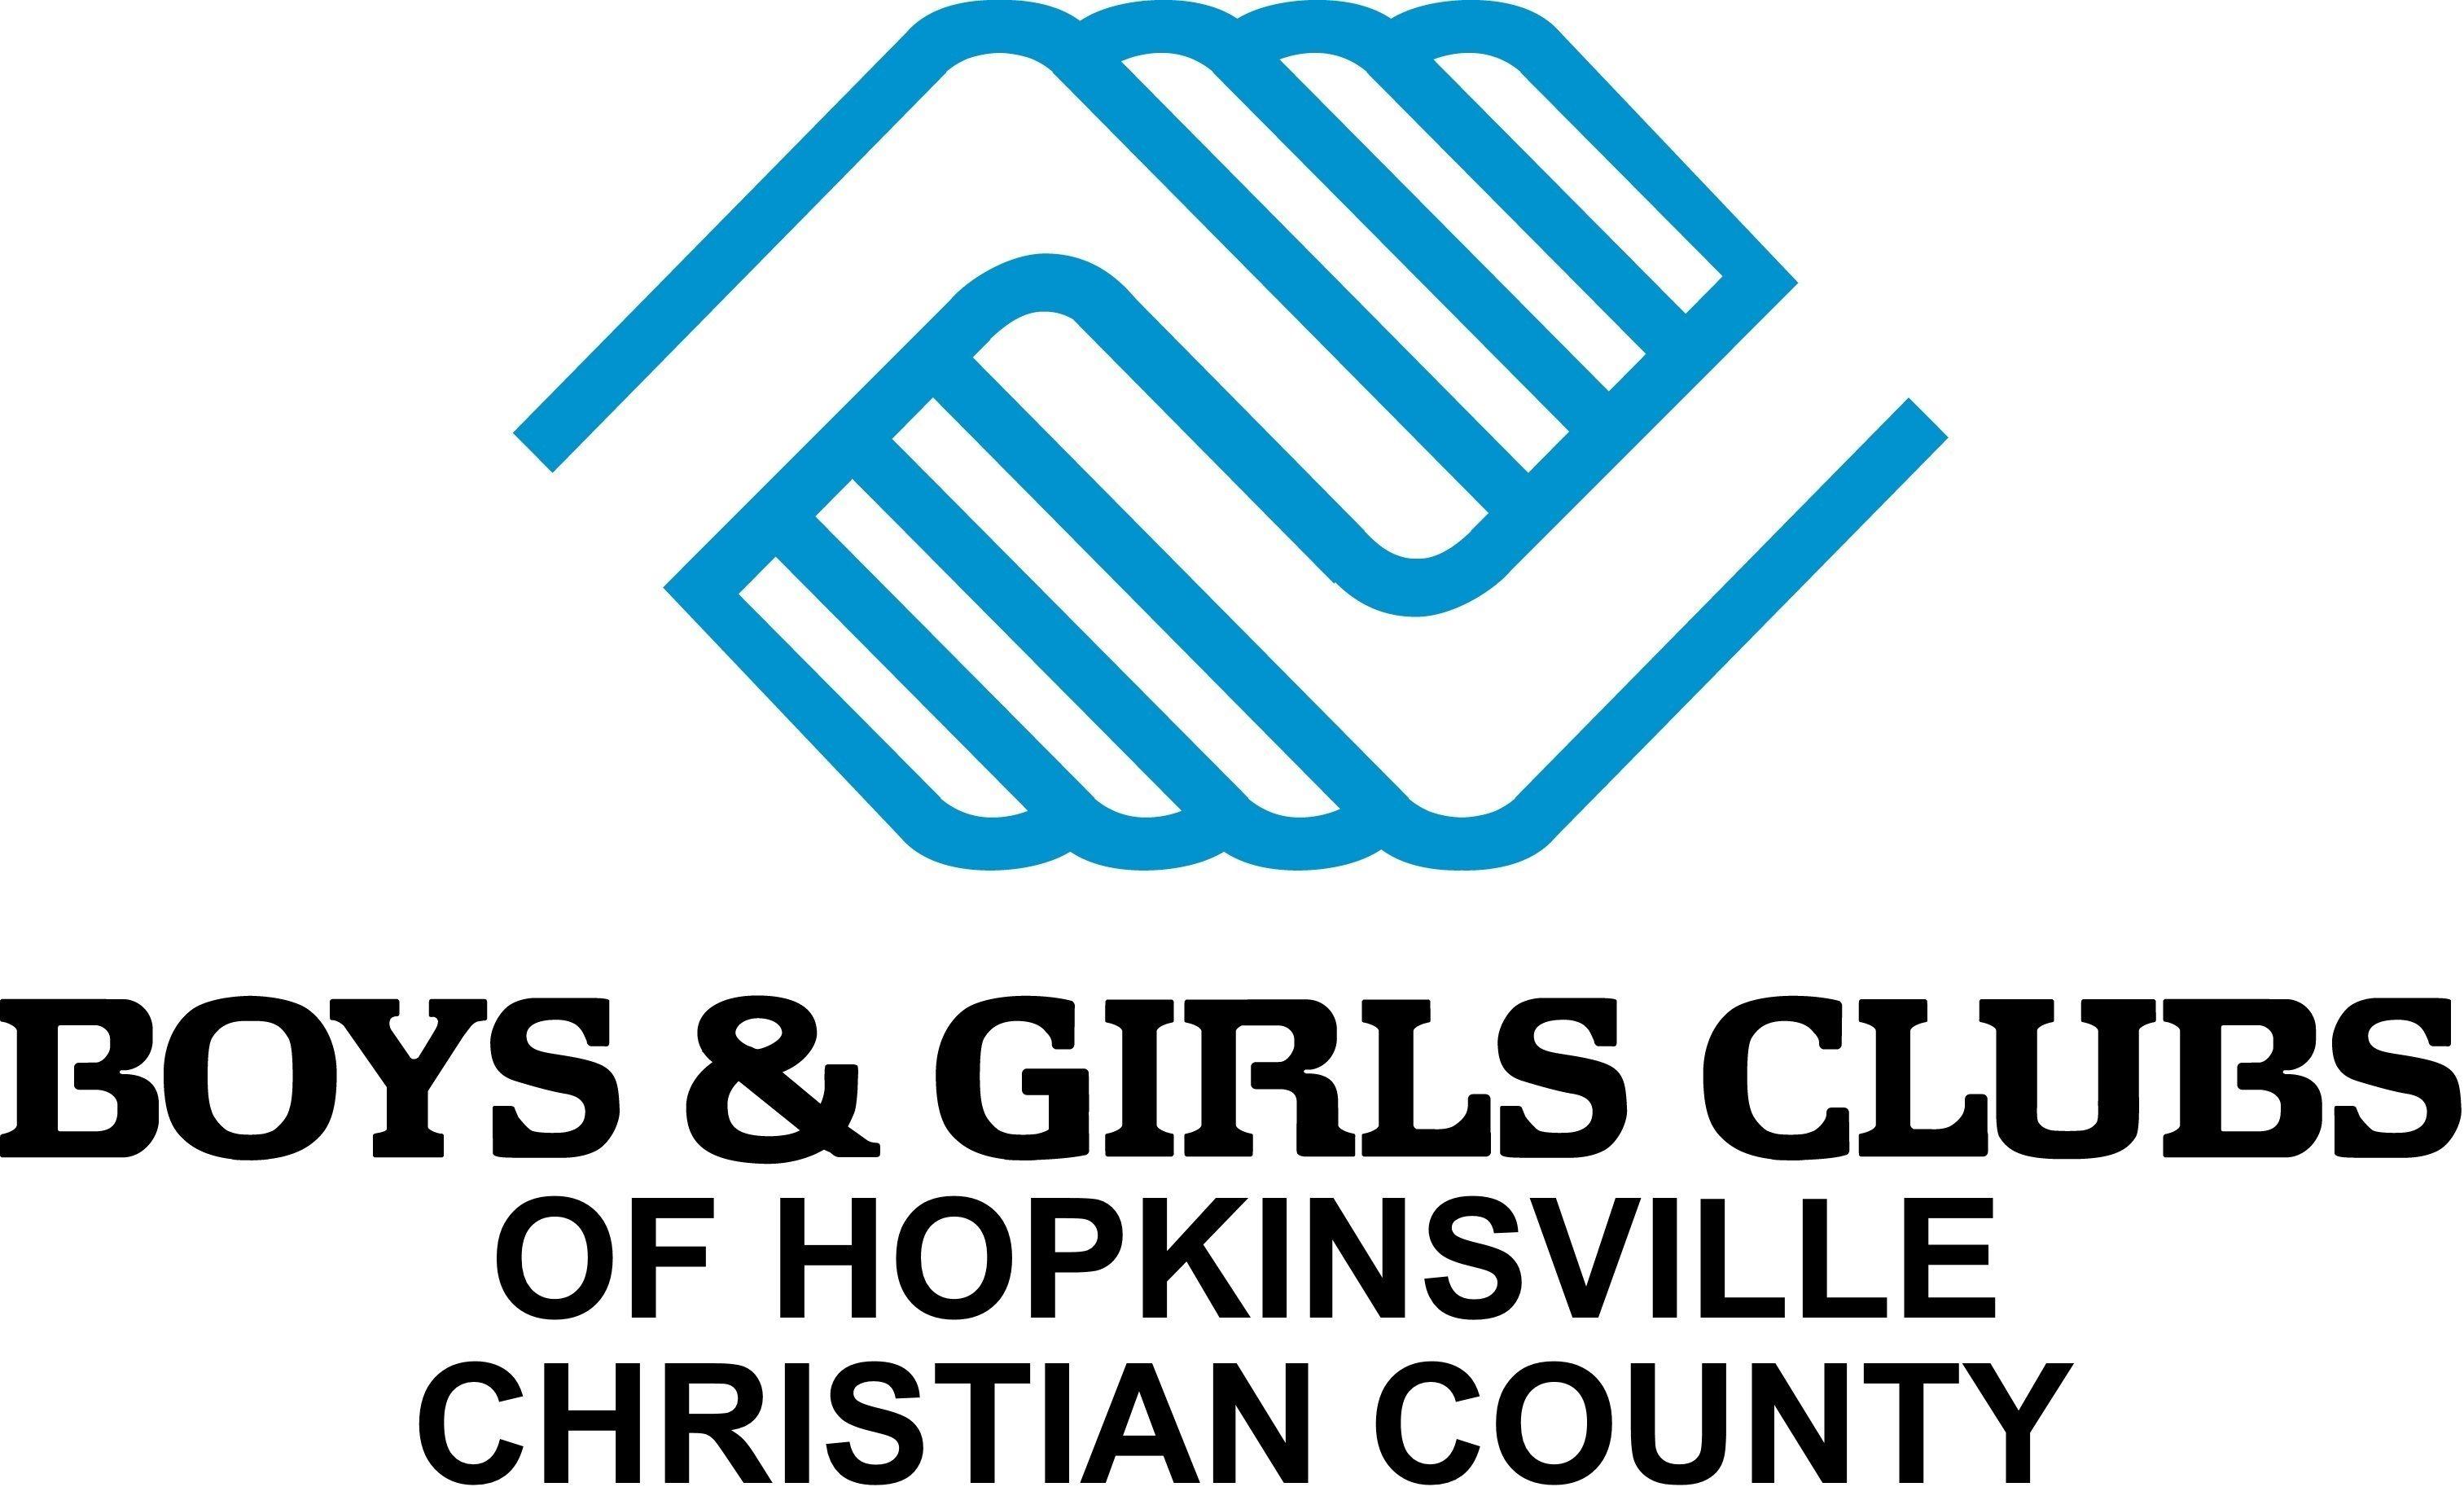 Girls Club Logo - Boys & Girls Club Logo - Riken Americas Corporation